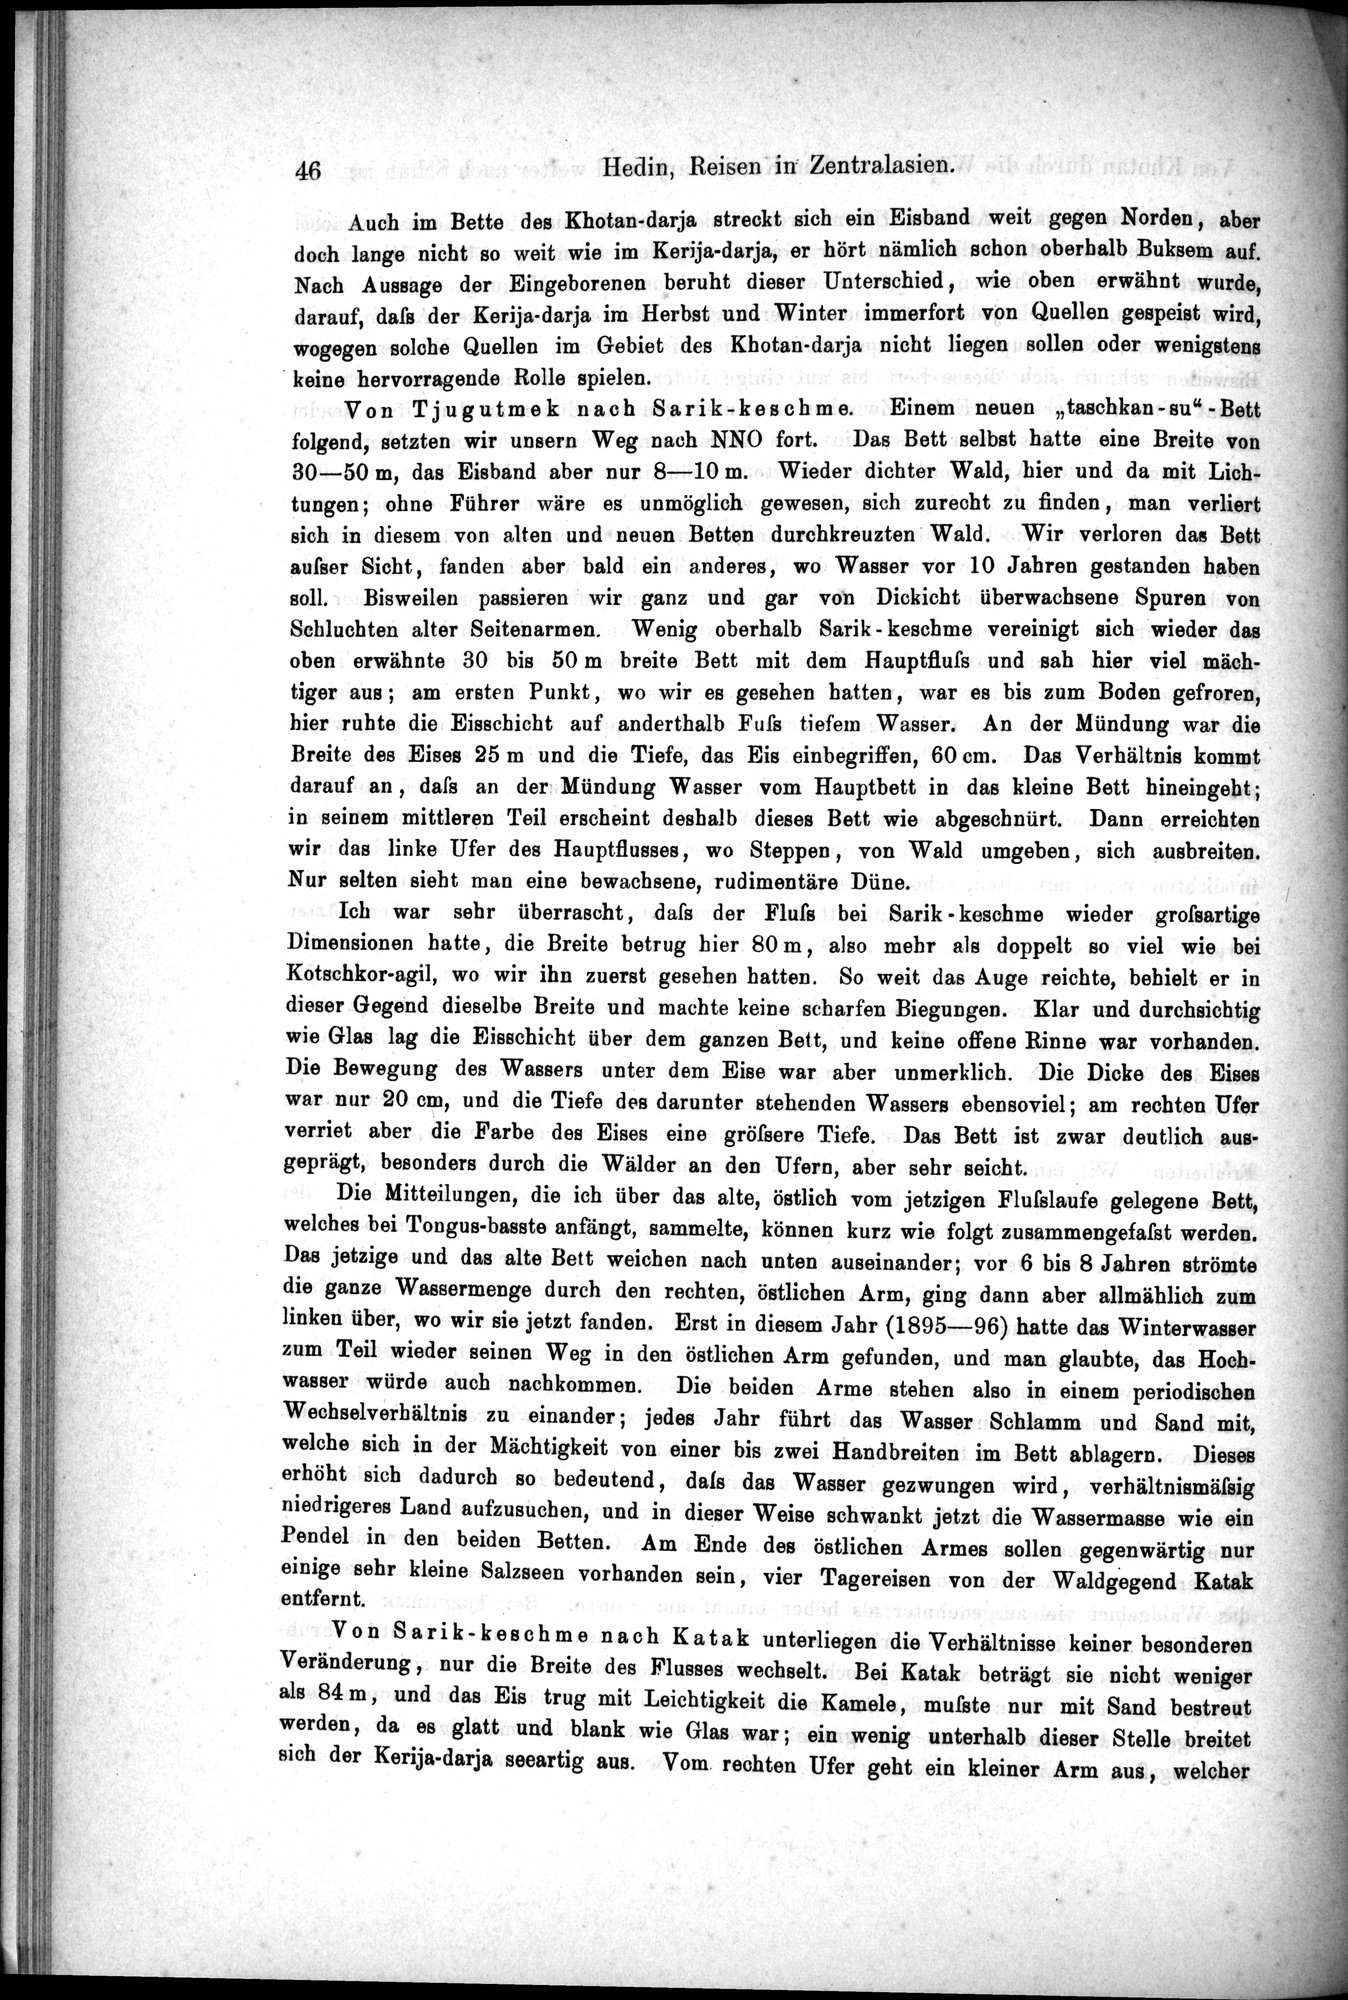 Die Geographische-Wissenschaftlichen Ergebnisse meiner Reisen in Zentralasien, 1894-1897 : vol.1 / Page 58 (Grayscale High Resolution Image)